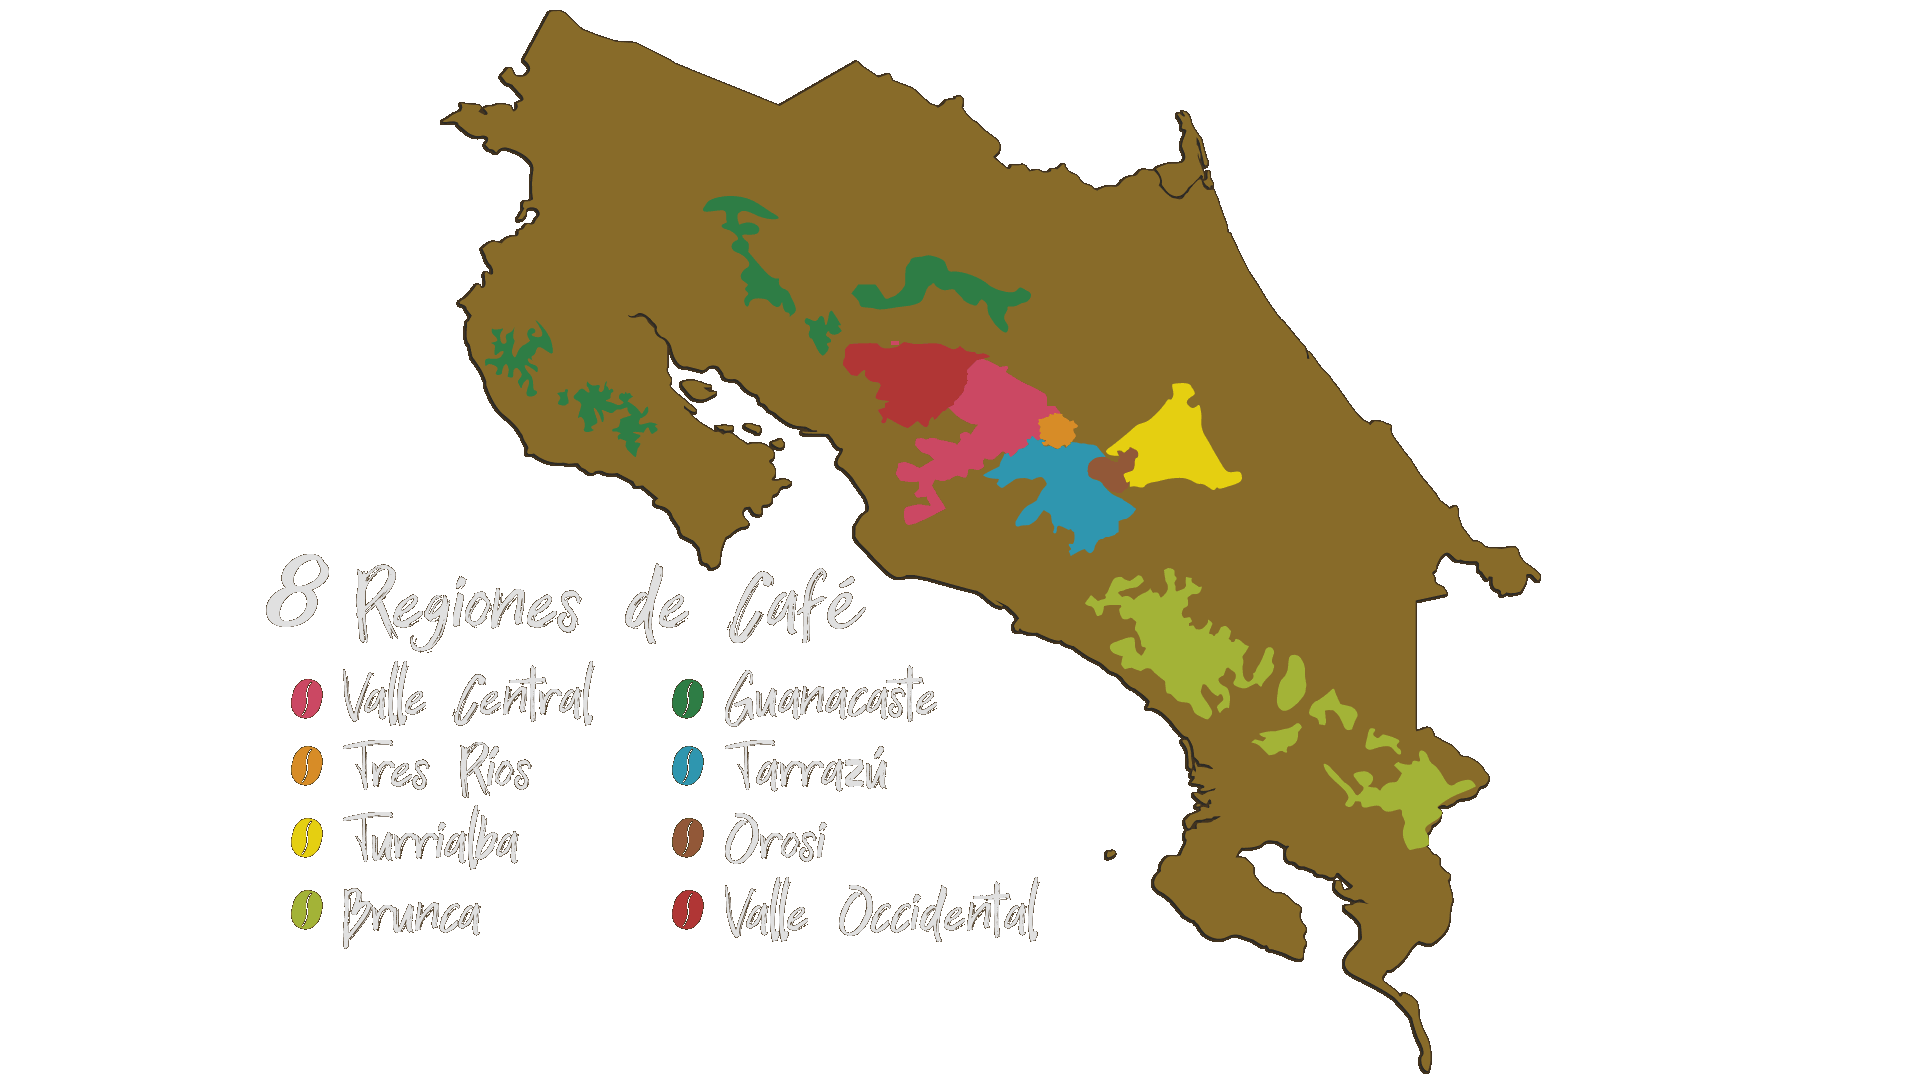 8 Regiones de Café de Costa Rica